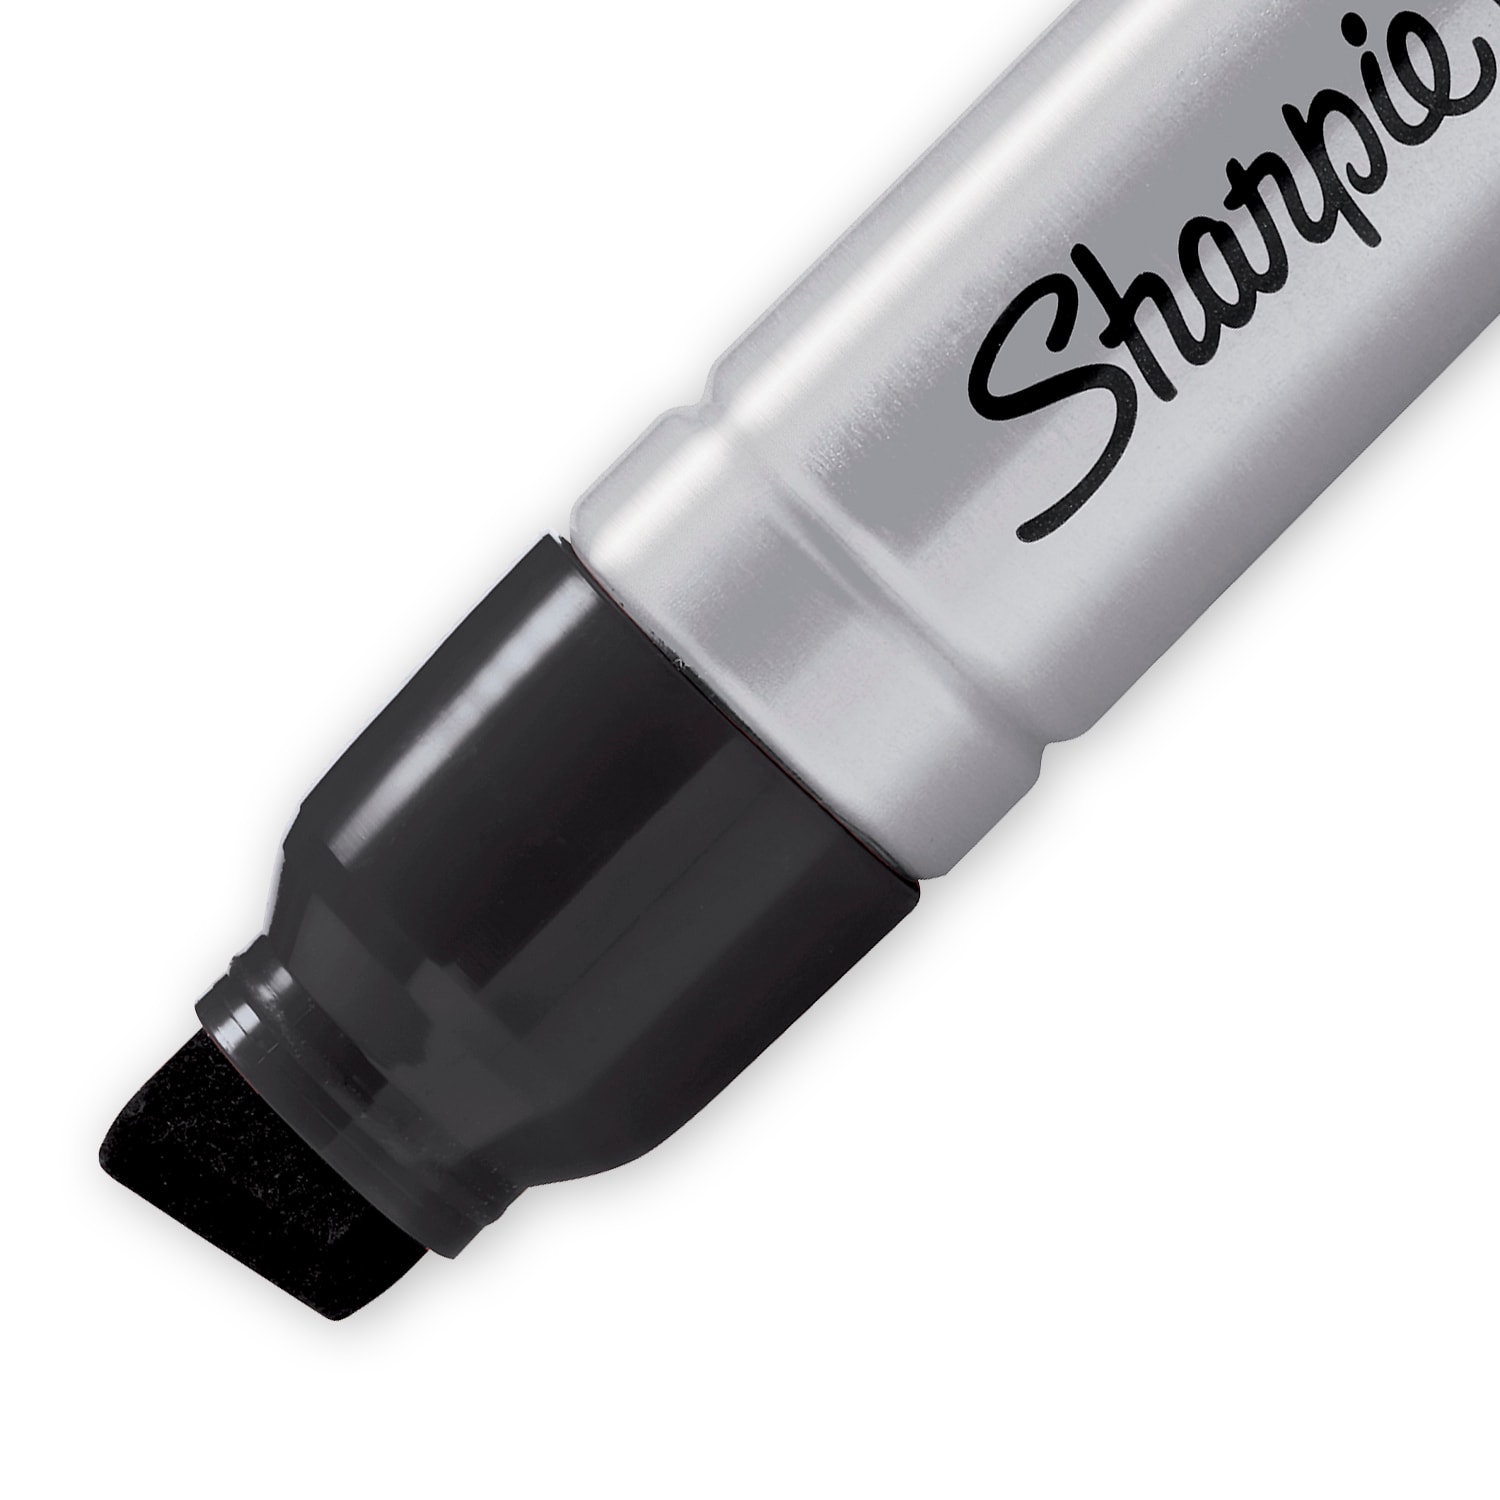 Sharpie Durable Metal Barrel Permanent Marker, Broad Chisel Tip, Black (1794224)